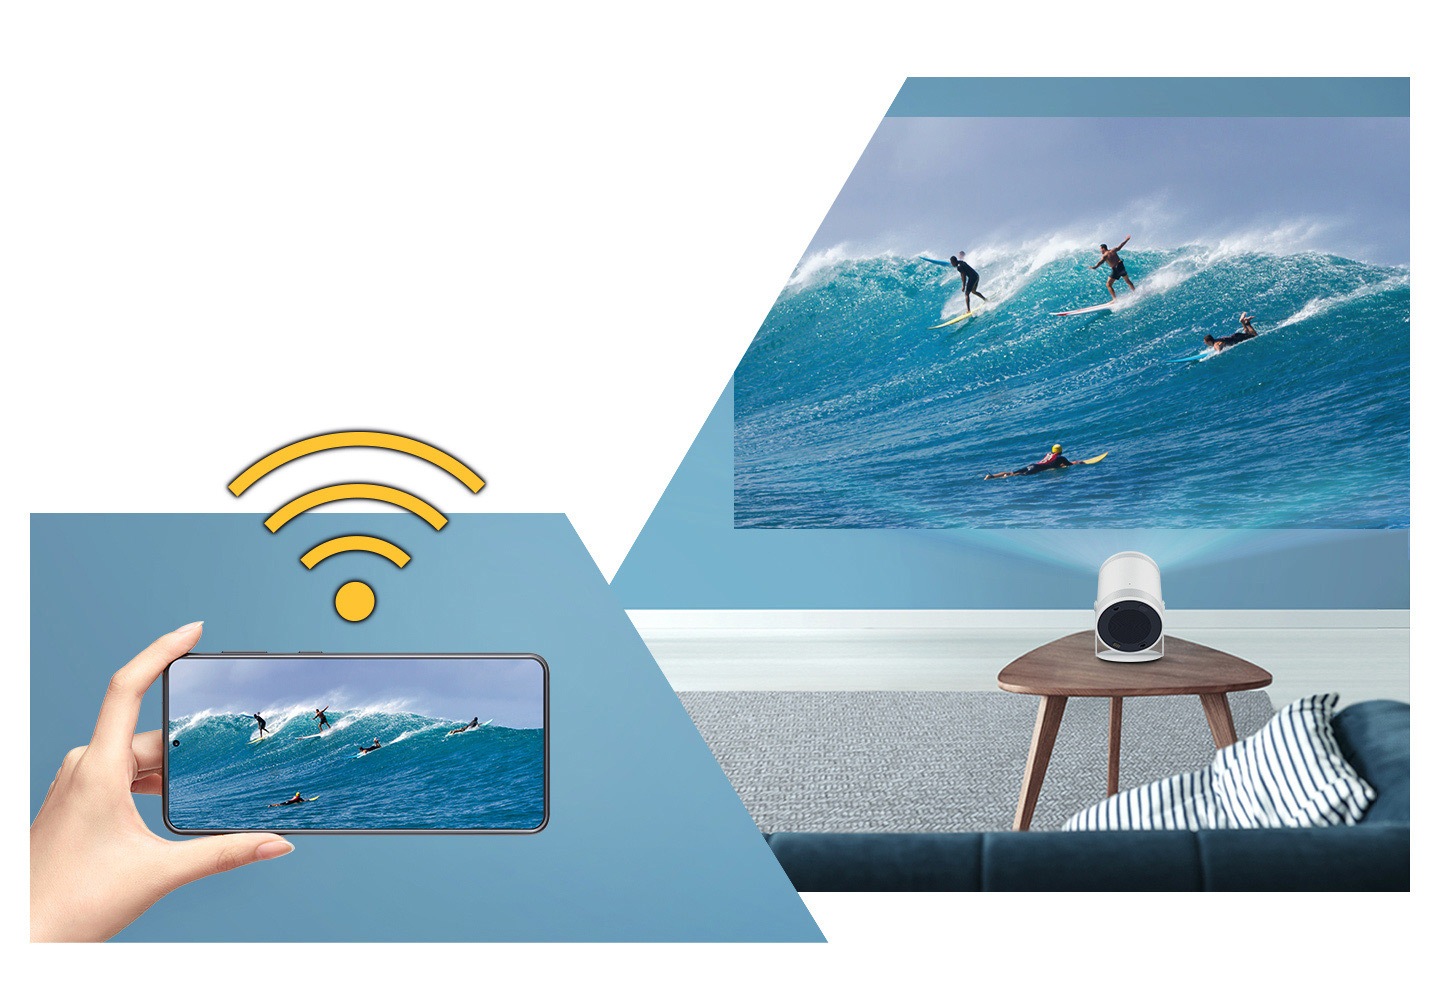 Het Wi-Fi-teken is te zien op een hand met een mobiel apparaat. Een afbeelding van een surfer is zowel op het mobiele apparaat als op het grote beeld van The Freestyle te zien.